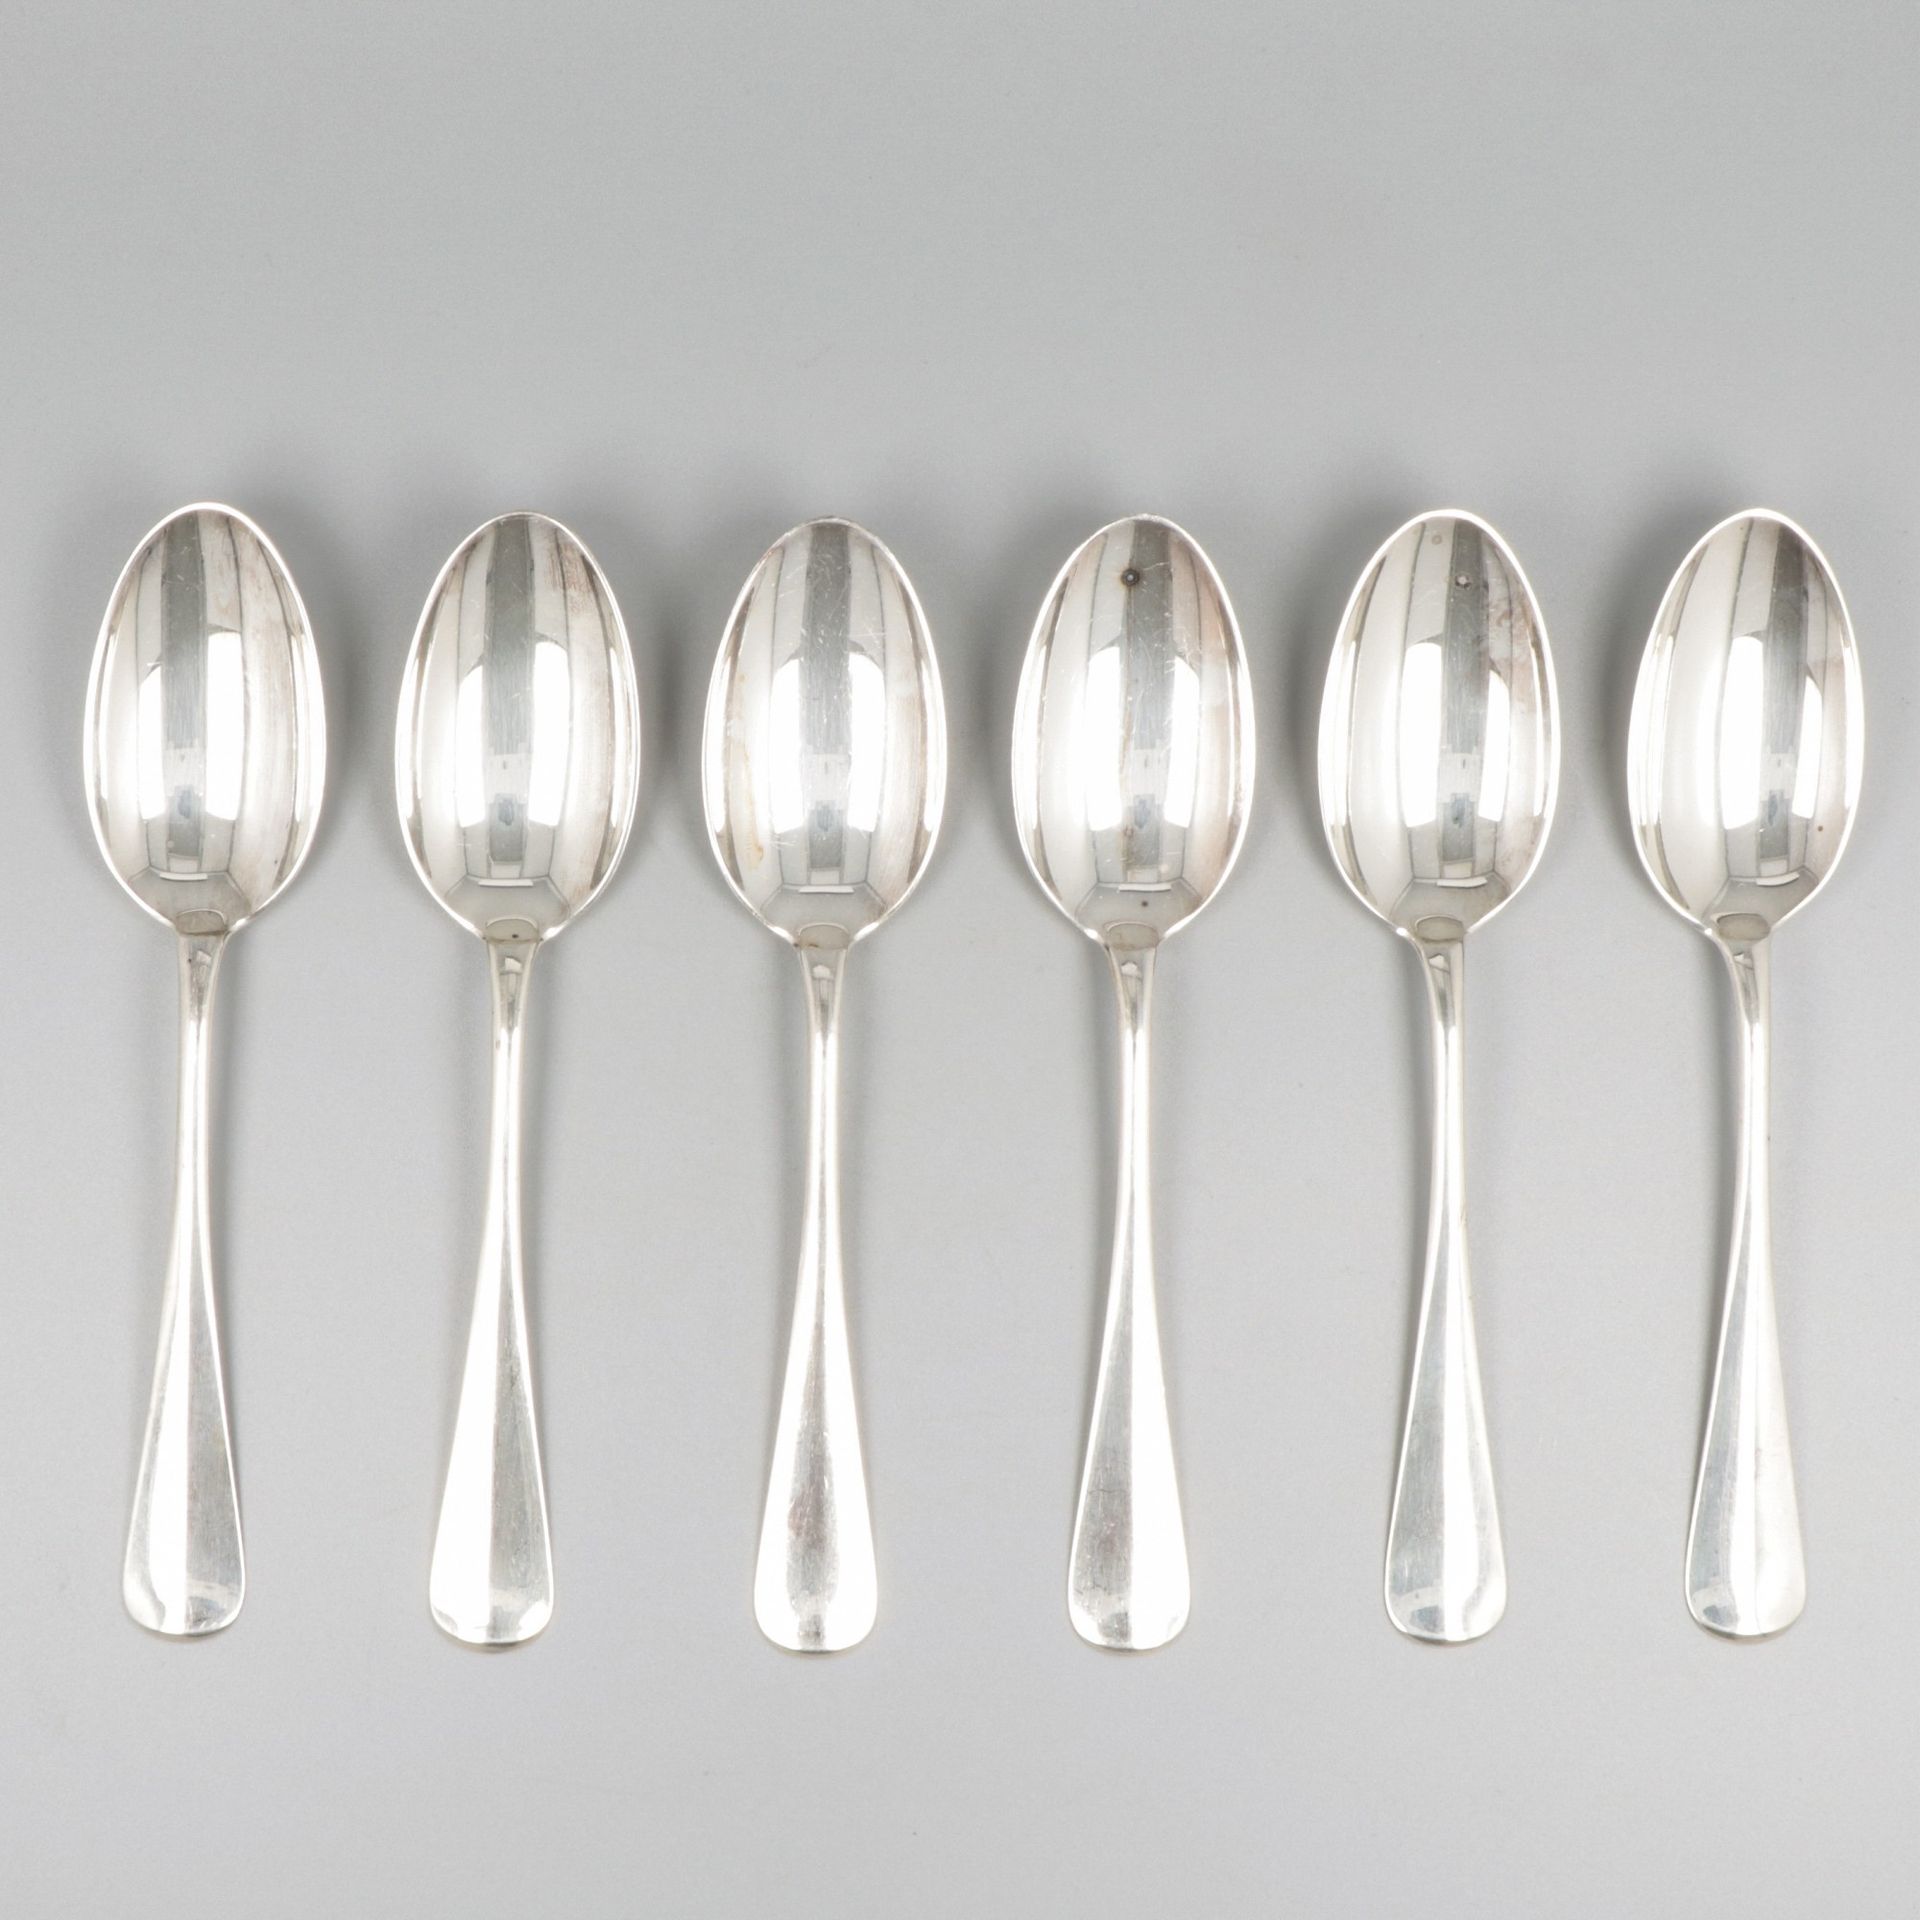 6-piece set of silver breakfast spoons. "Hollands Glad" oder holländisch glatt. &hellip;